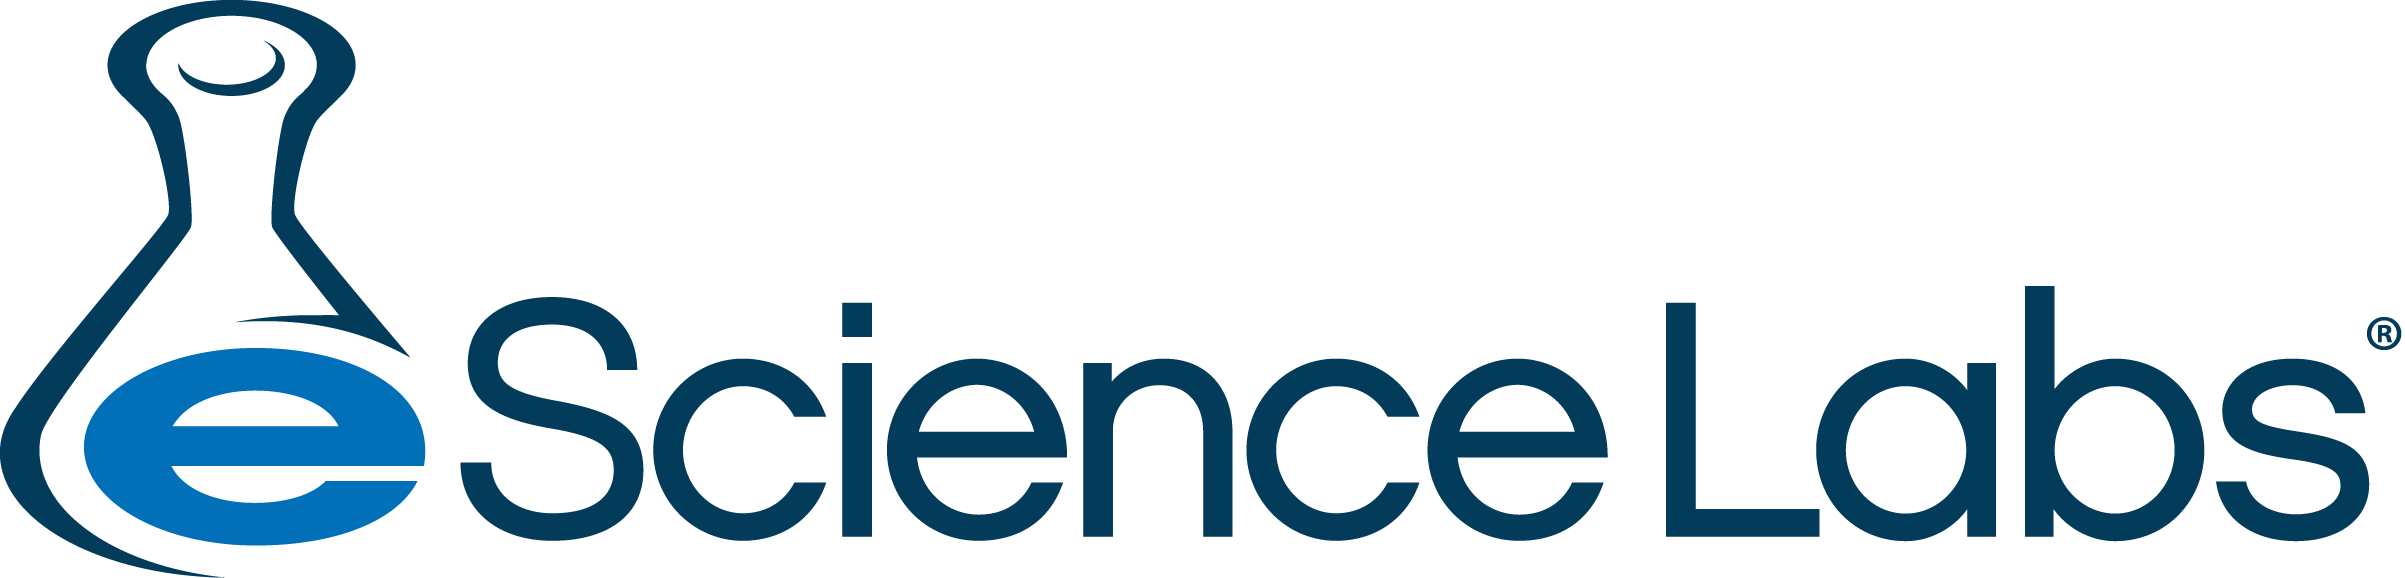 eScience labs logo